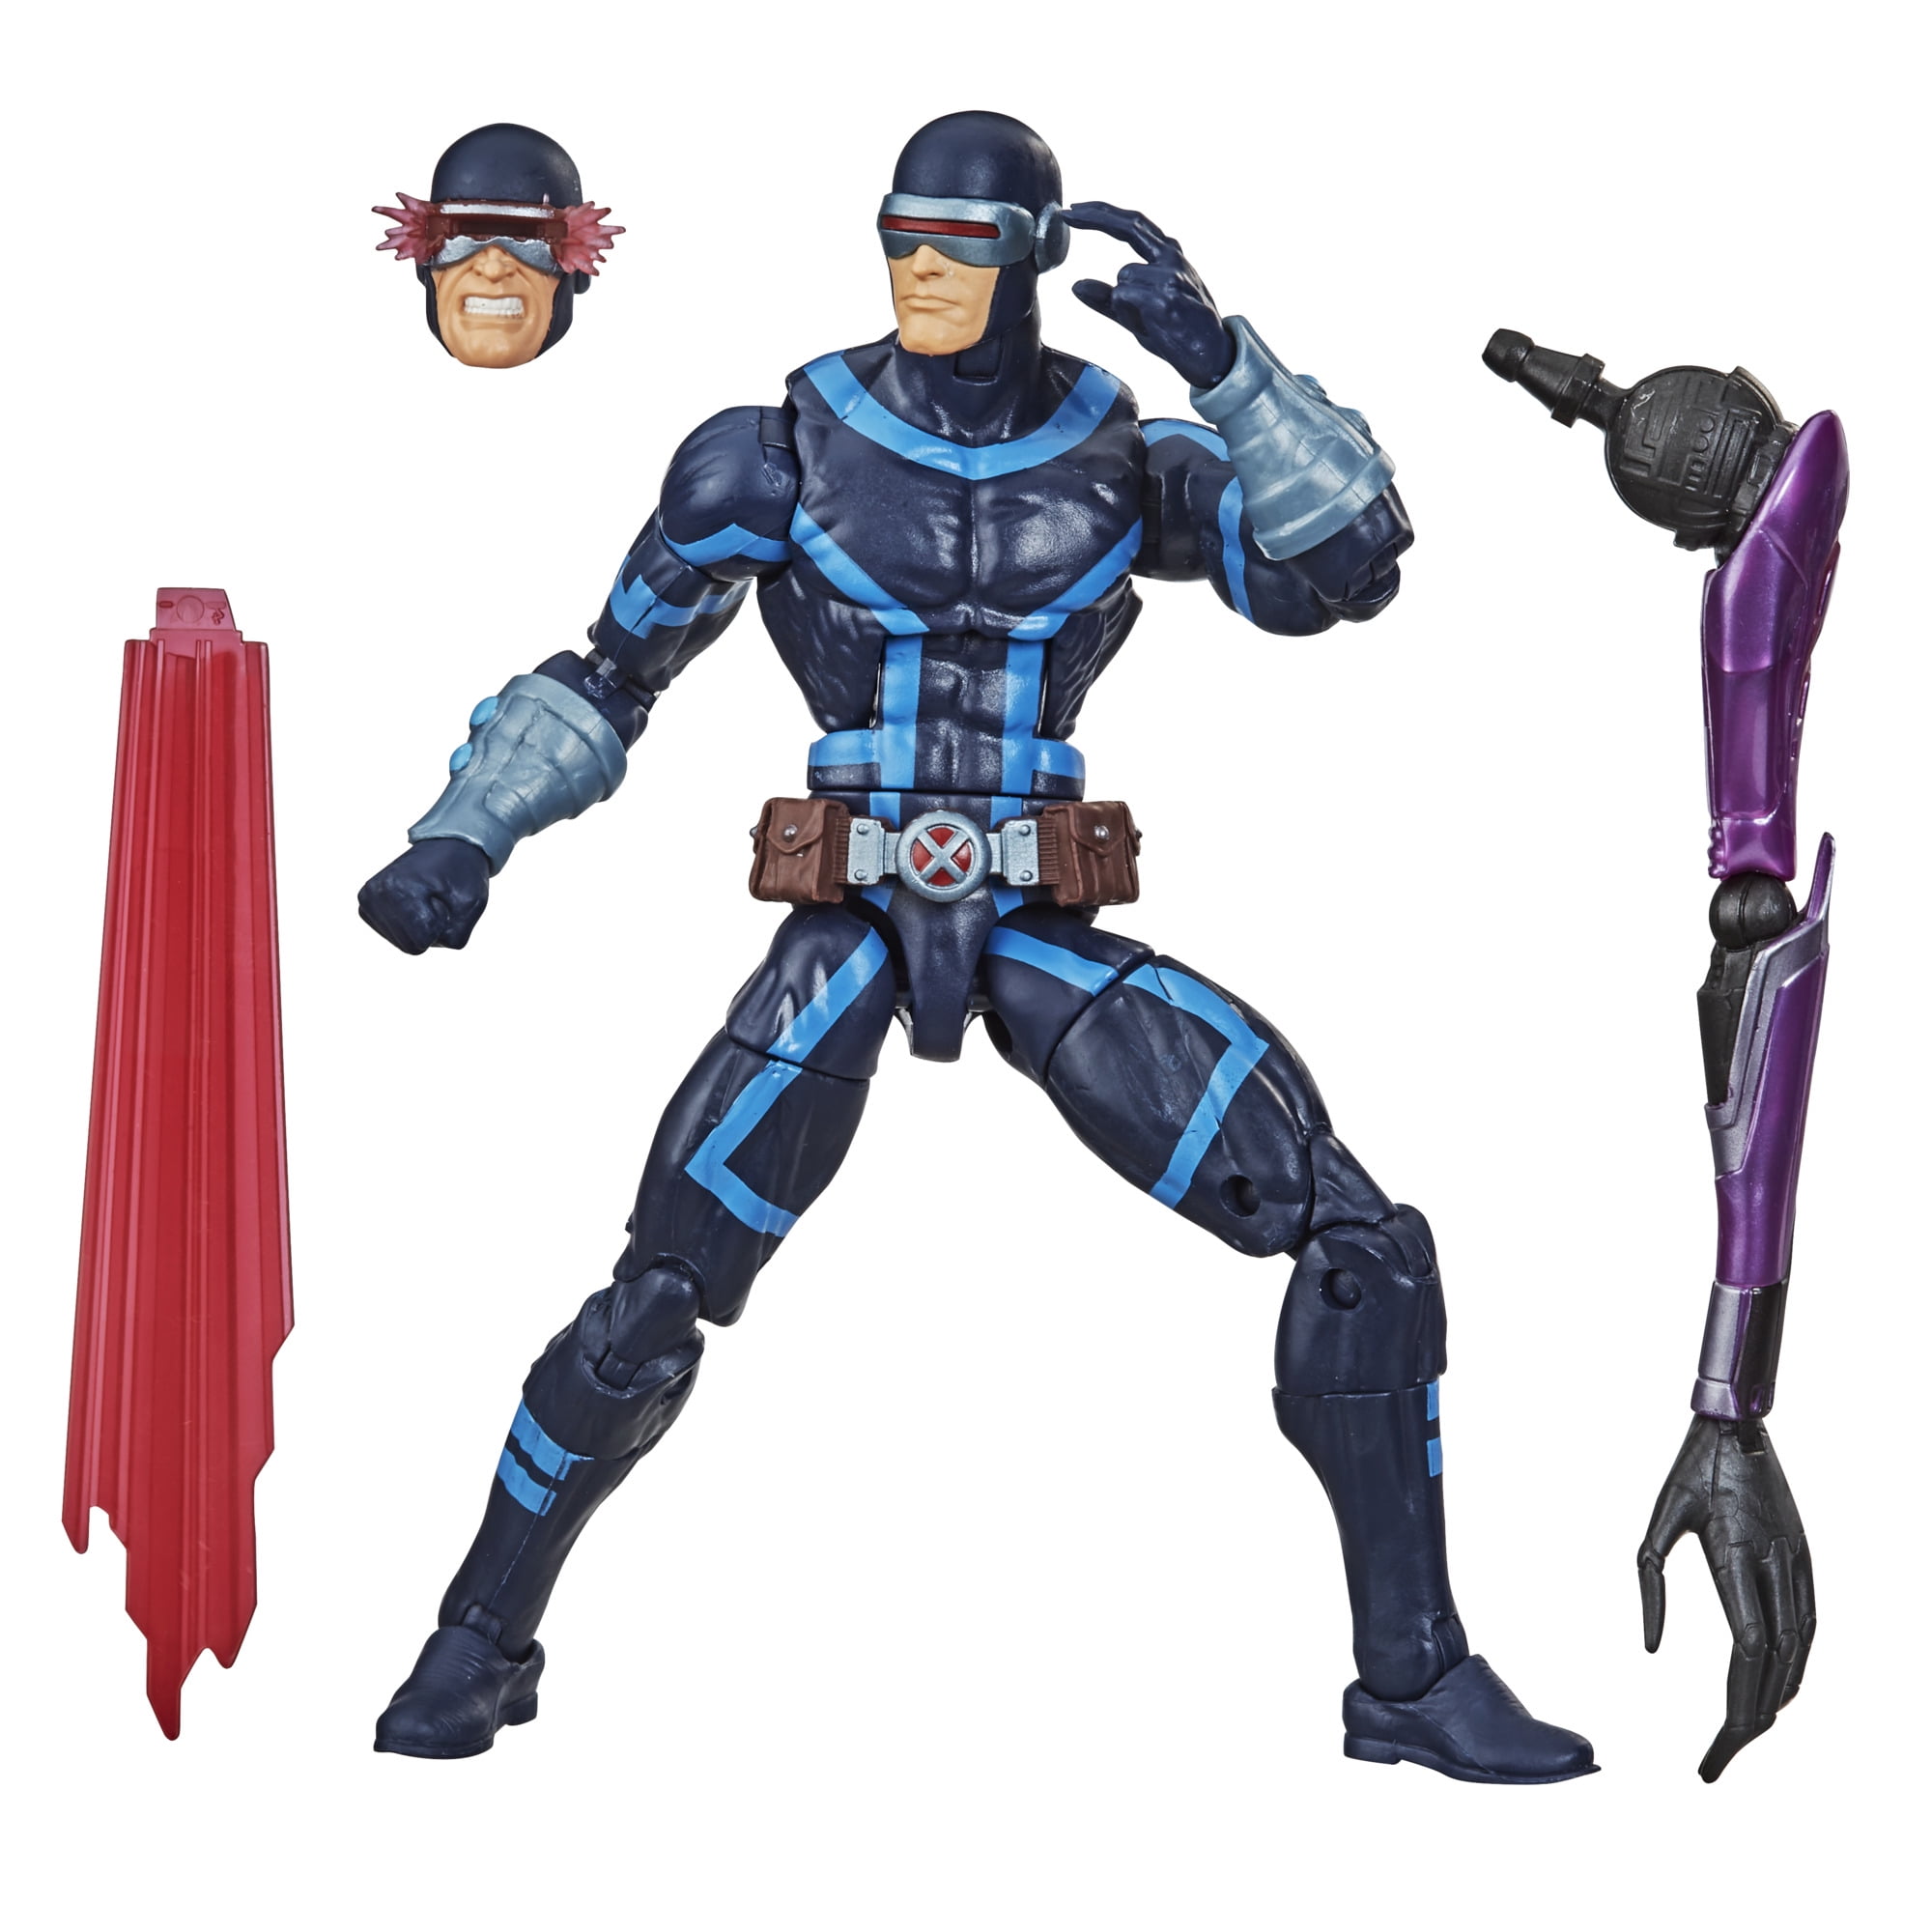 Marvel Legends Storm Black Outfit X-Men Action Figure 6-Inch Black Suit Retro 